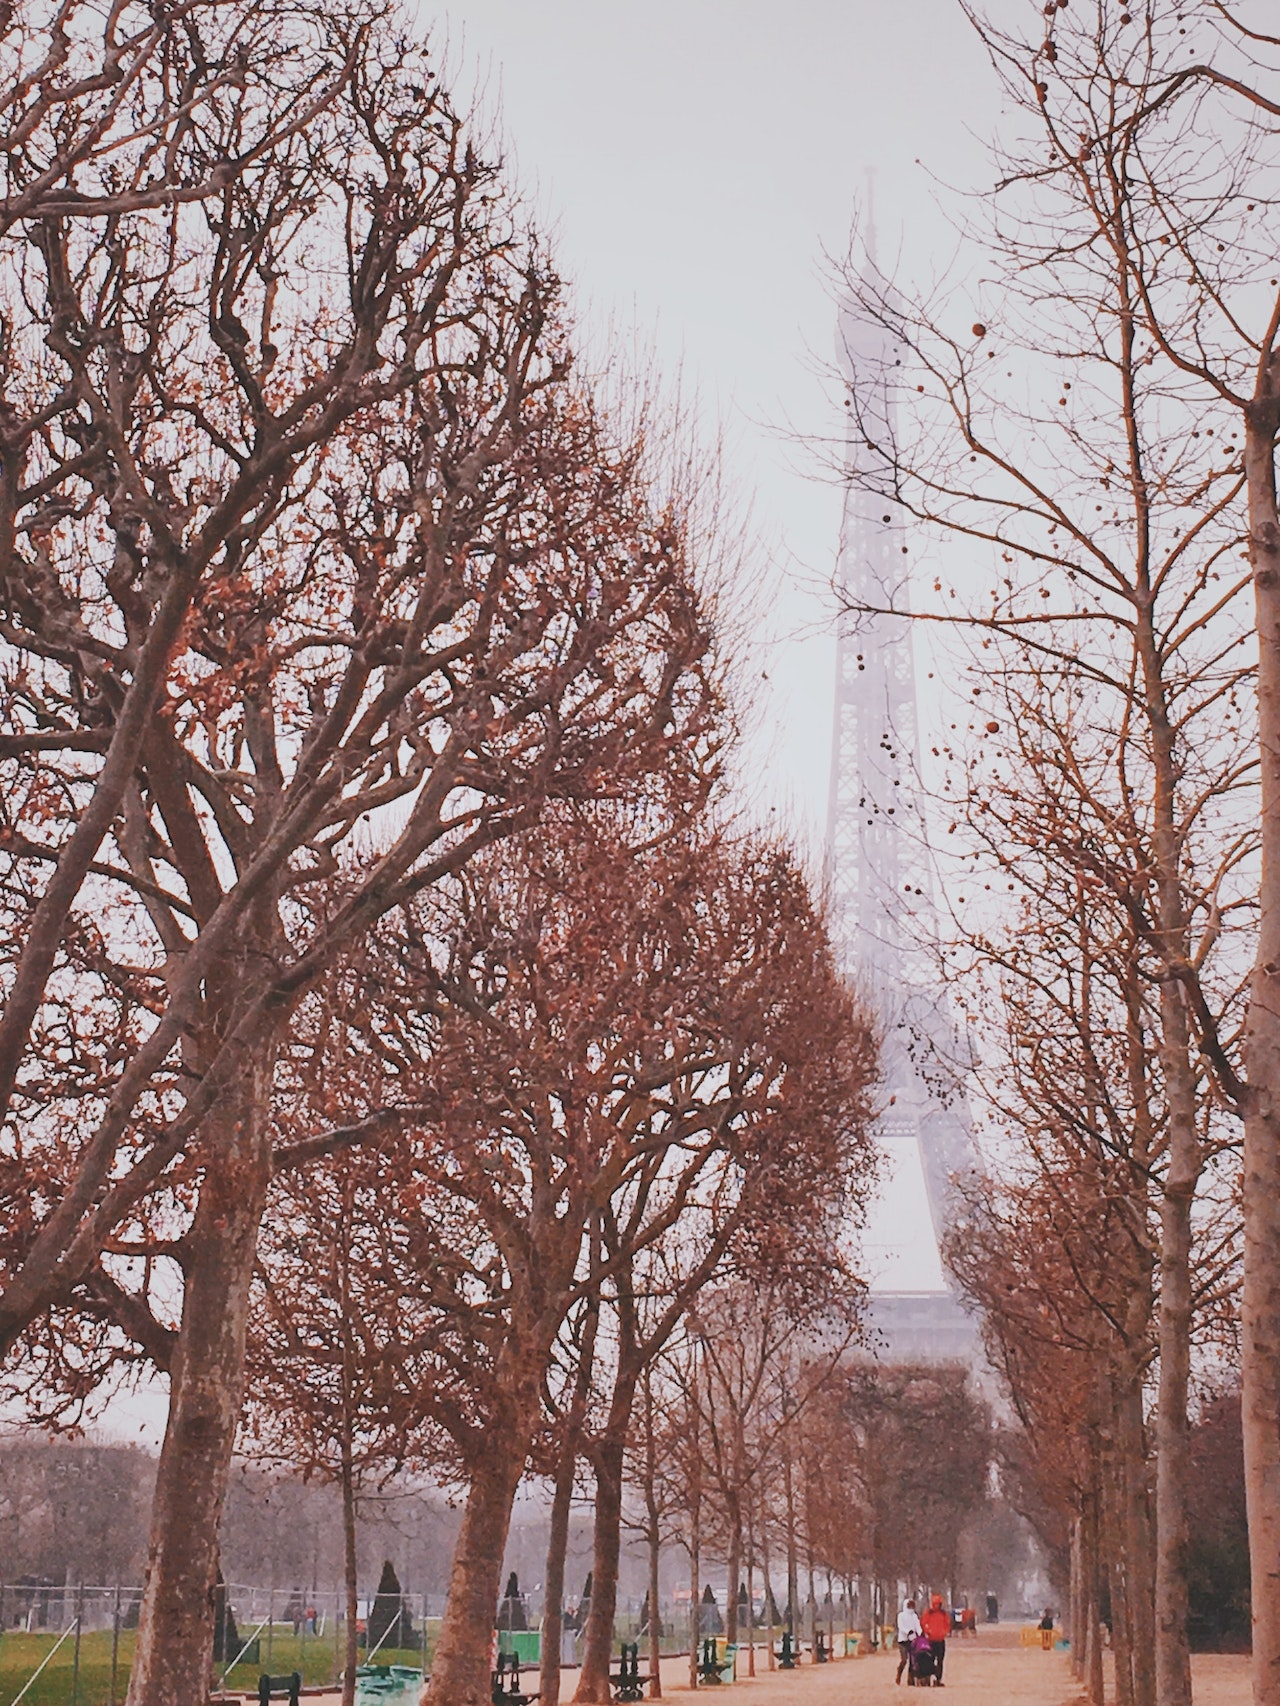 Winter weather in Paris